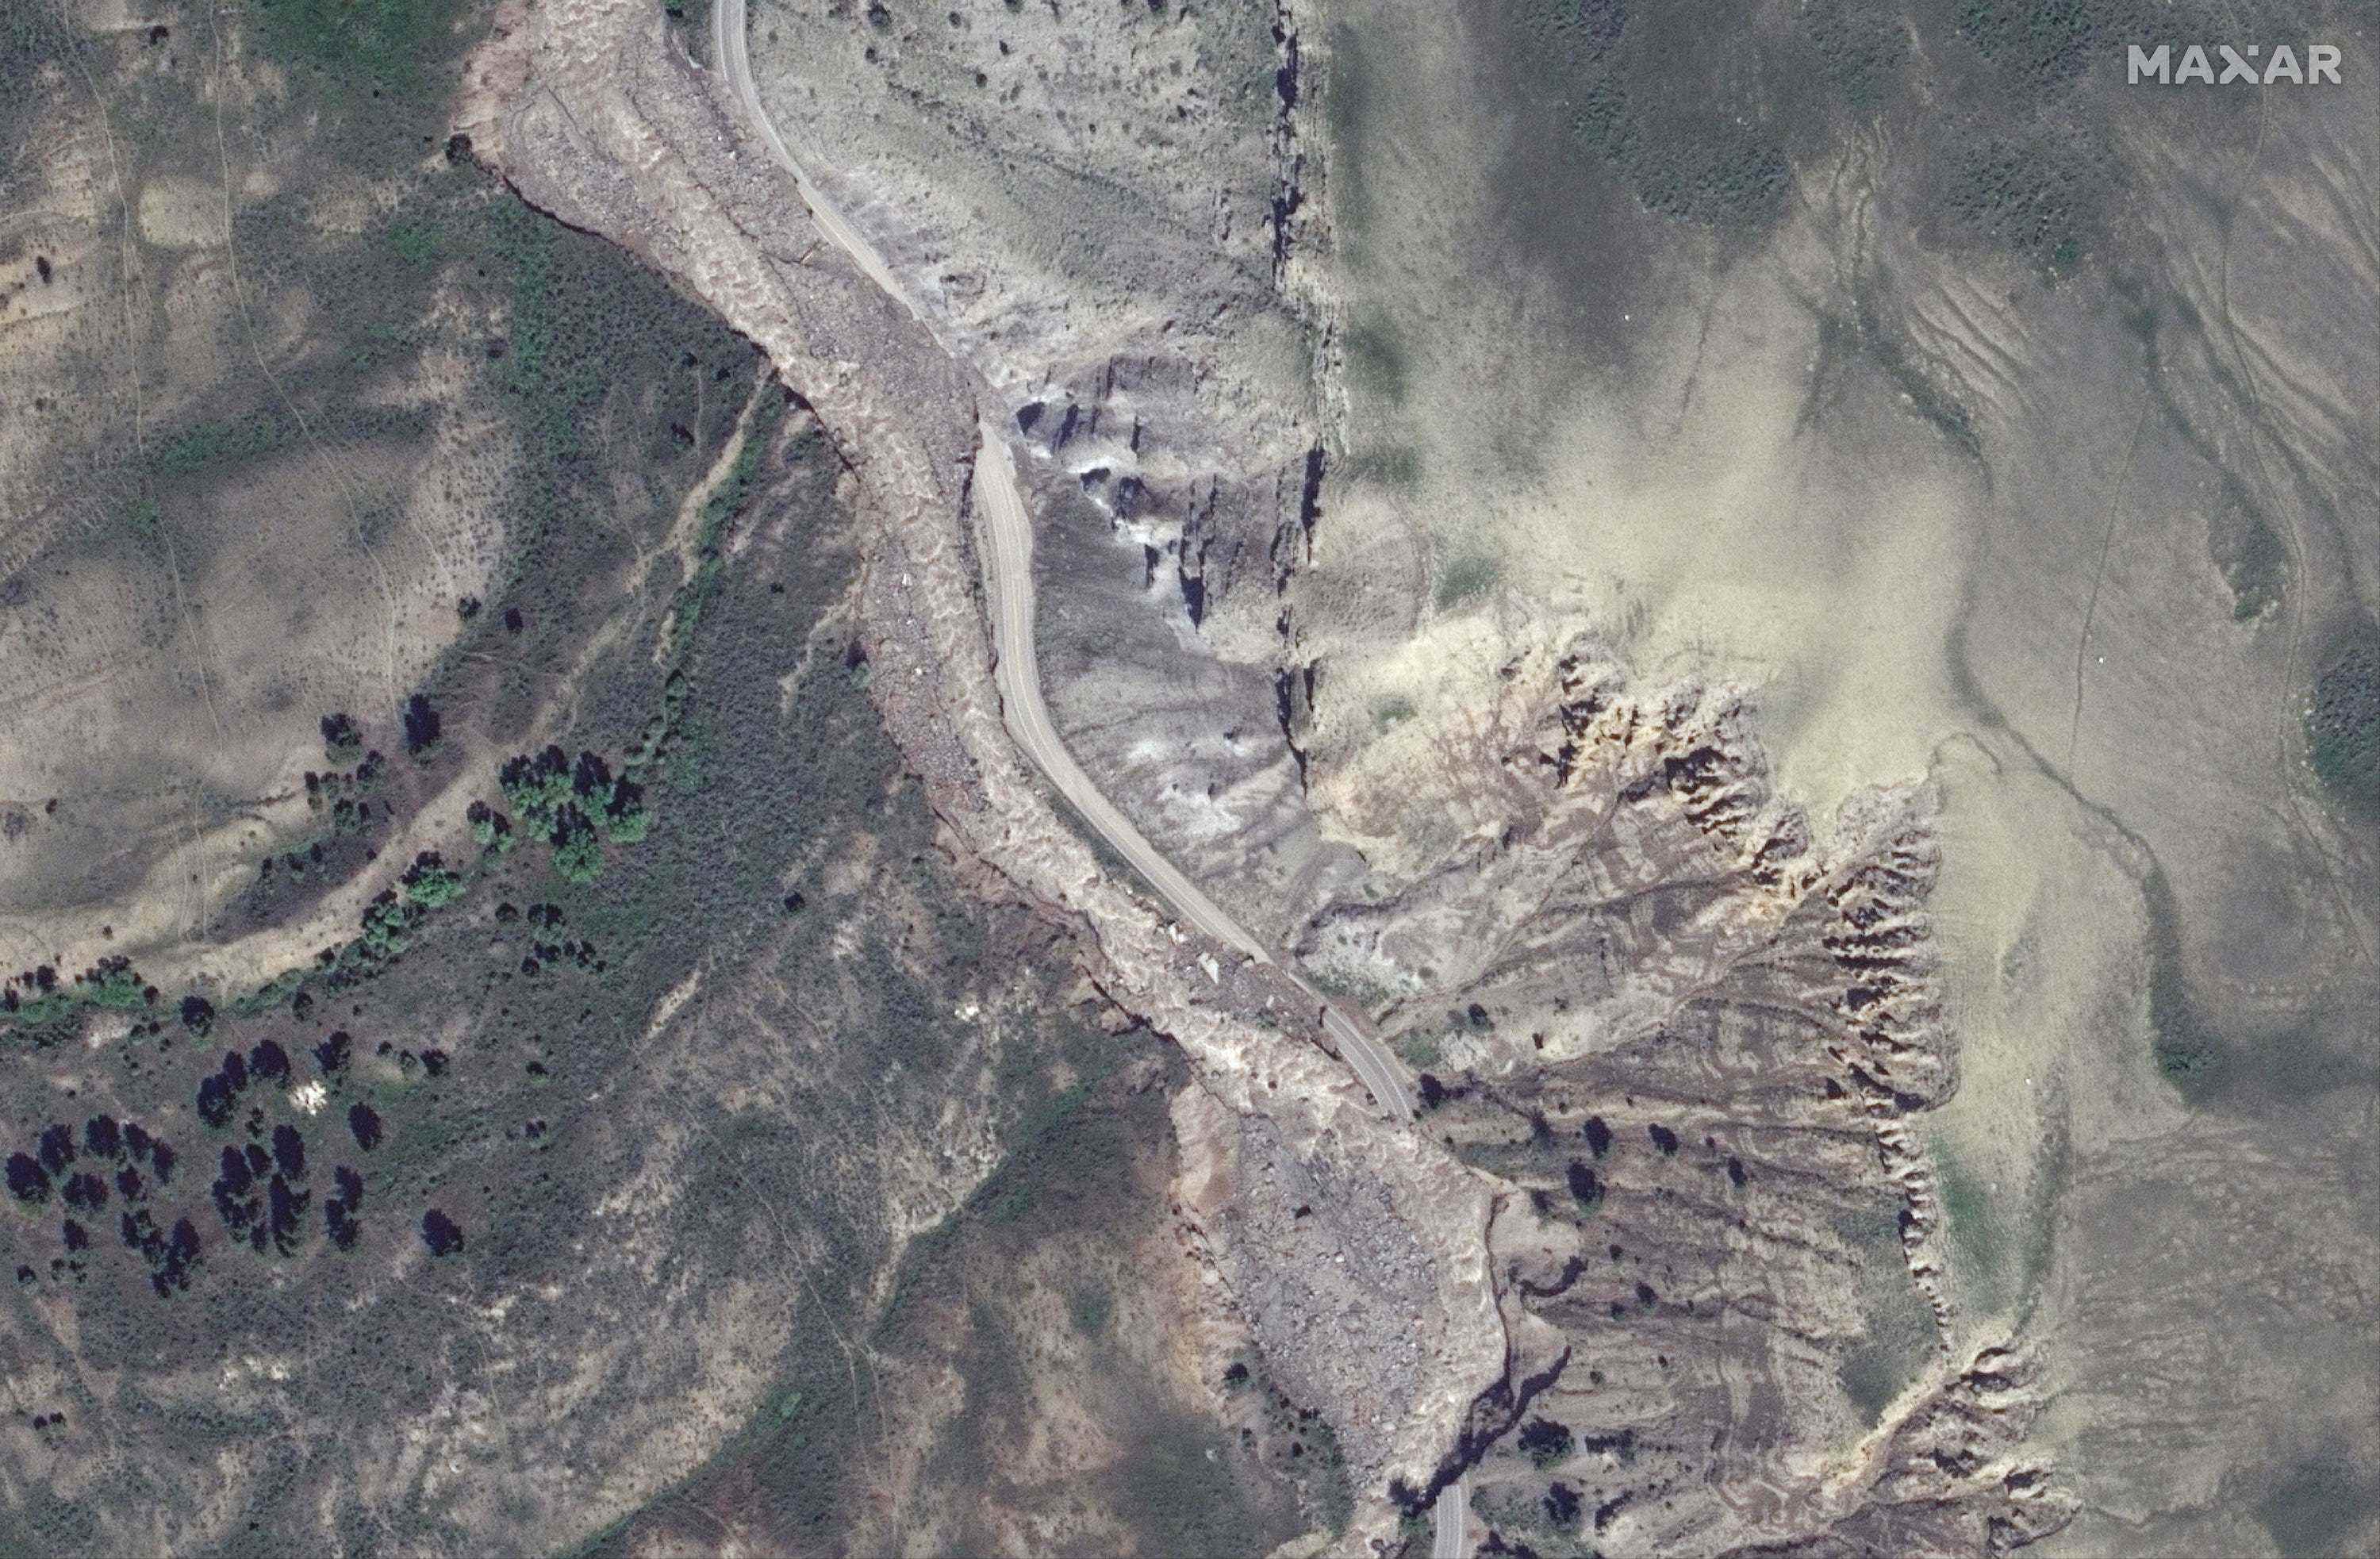 Das Satellitenbild zeigt eine Bergstraße mit großen Abschnitten, die entlang eines graubraunen Flusses weggebröckelt sind